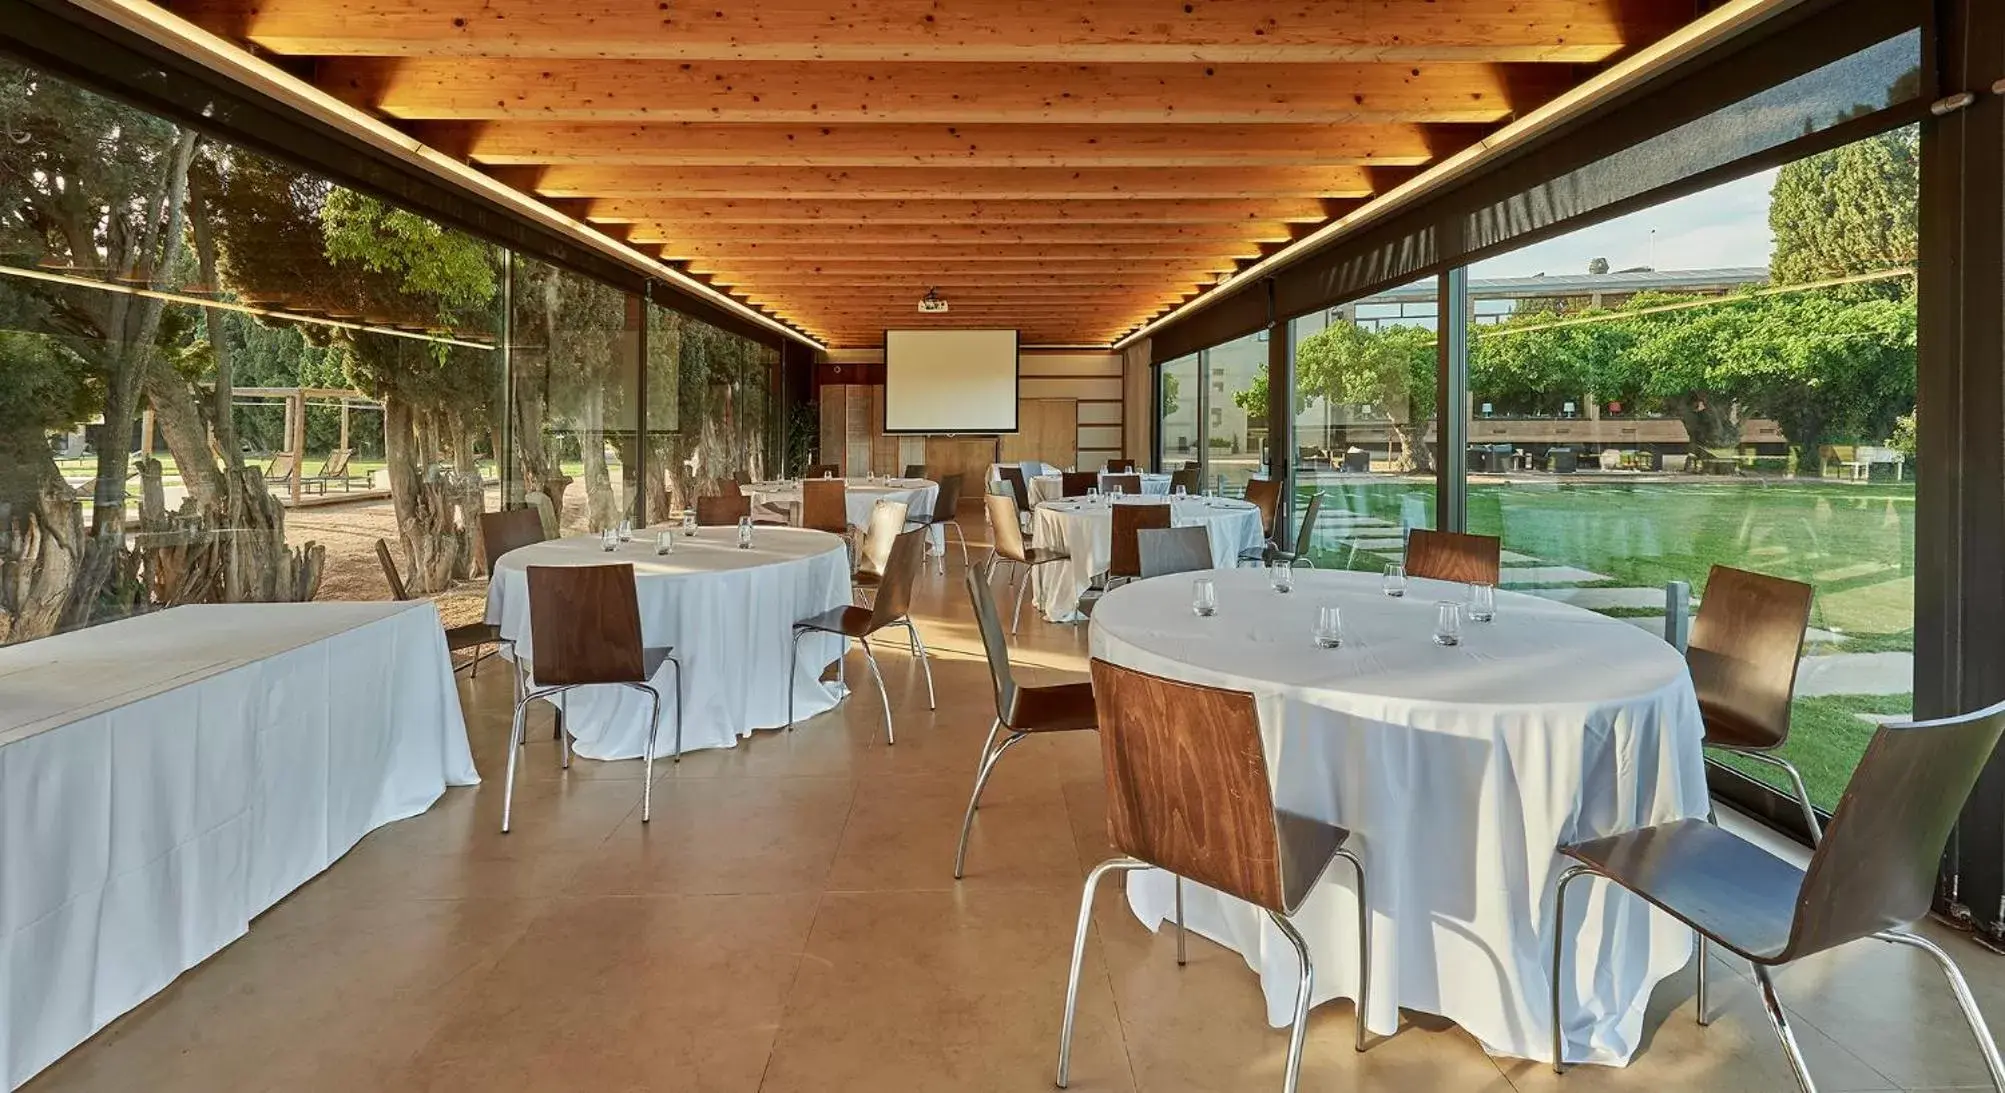 Banquet/Function facilities, Banquet Facilities in URH - Hotel Molí del Mig